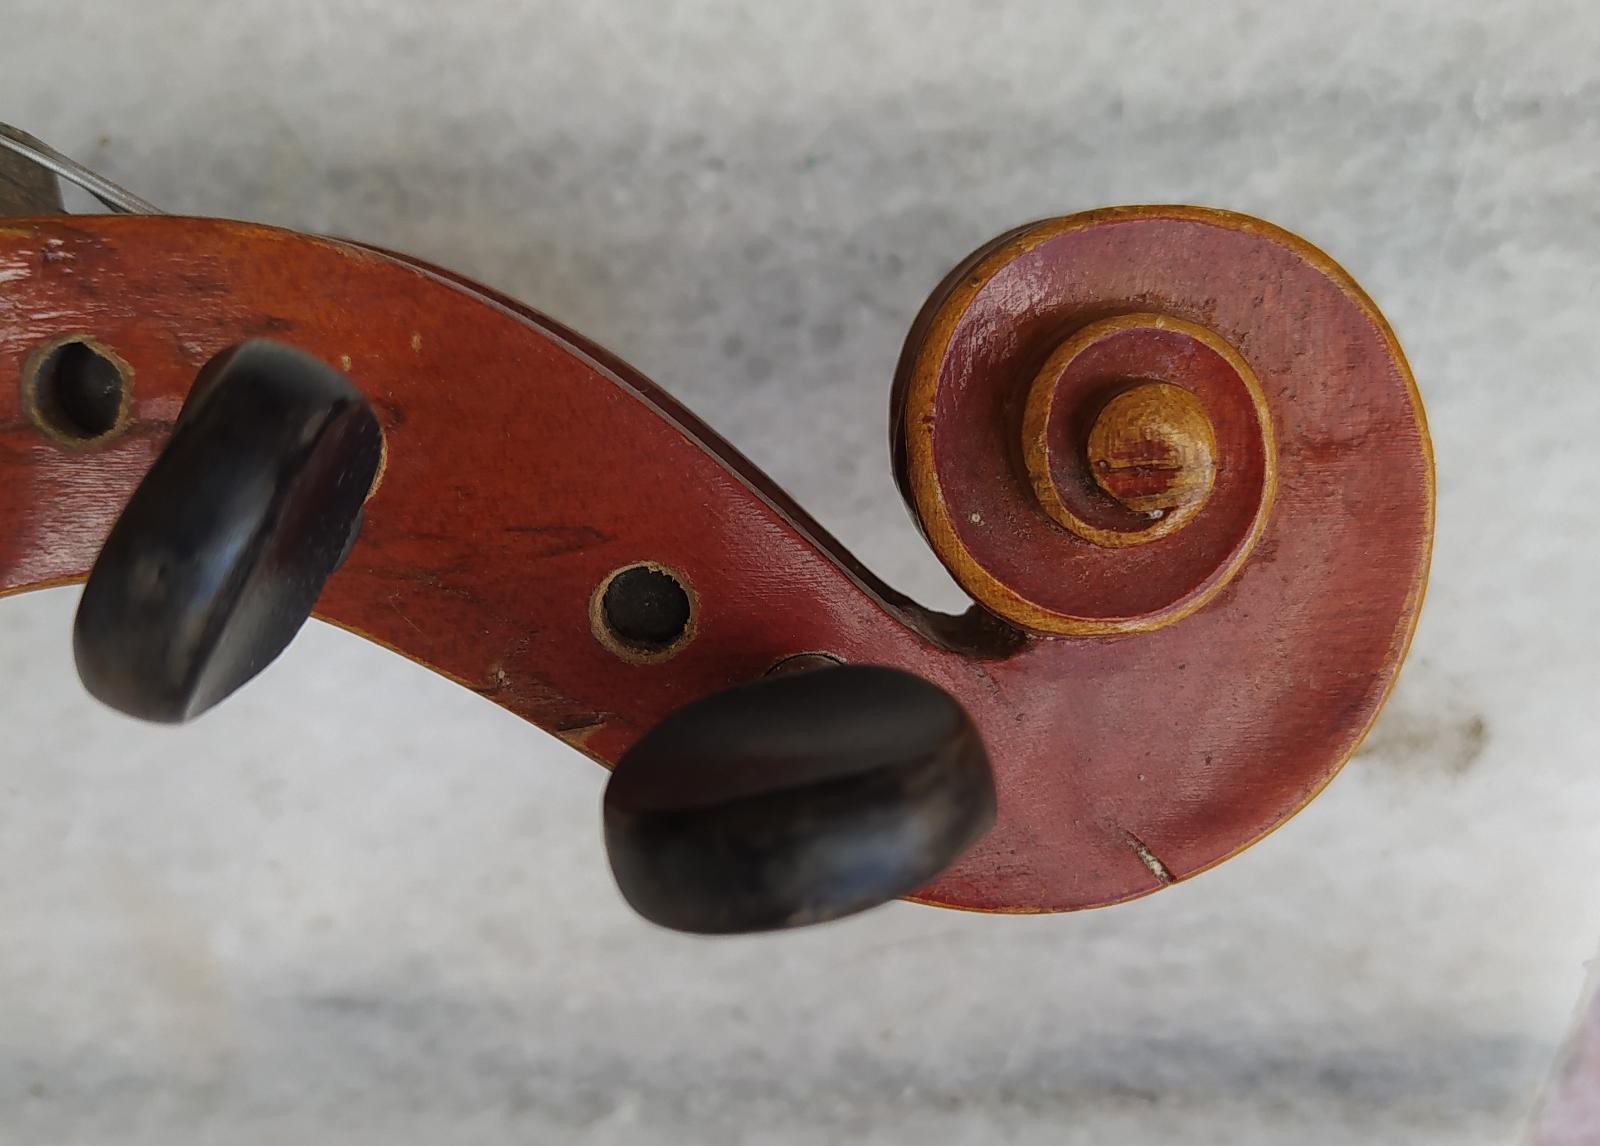 Staré housle - Hudební nástroje